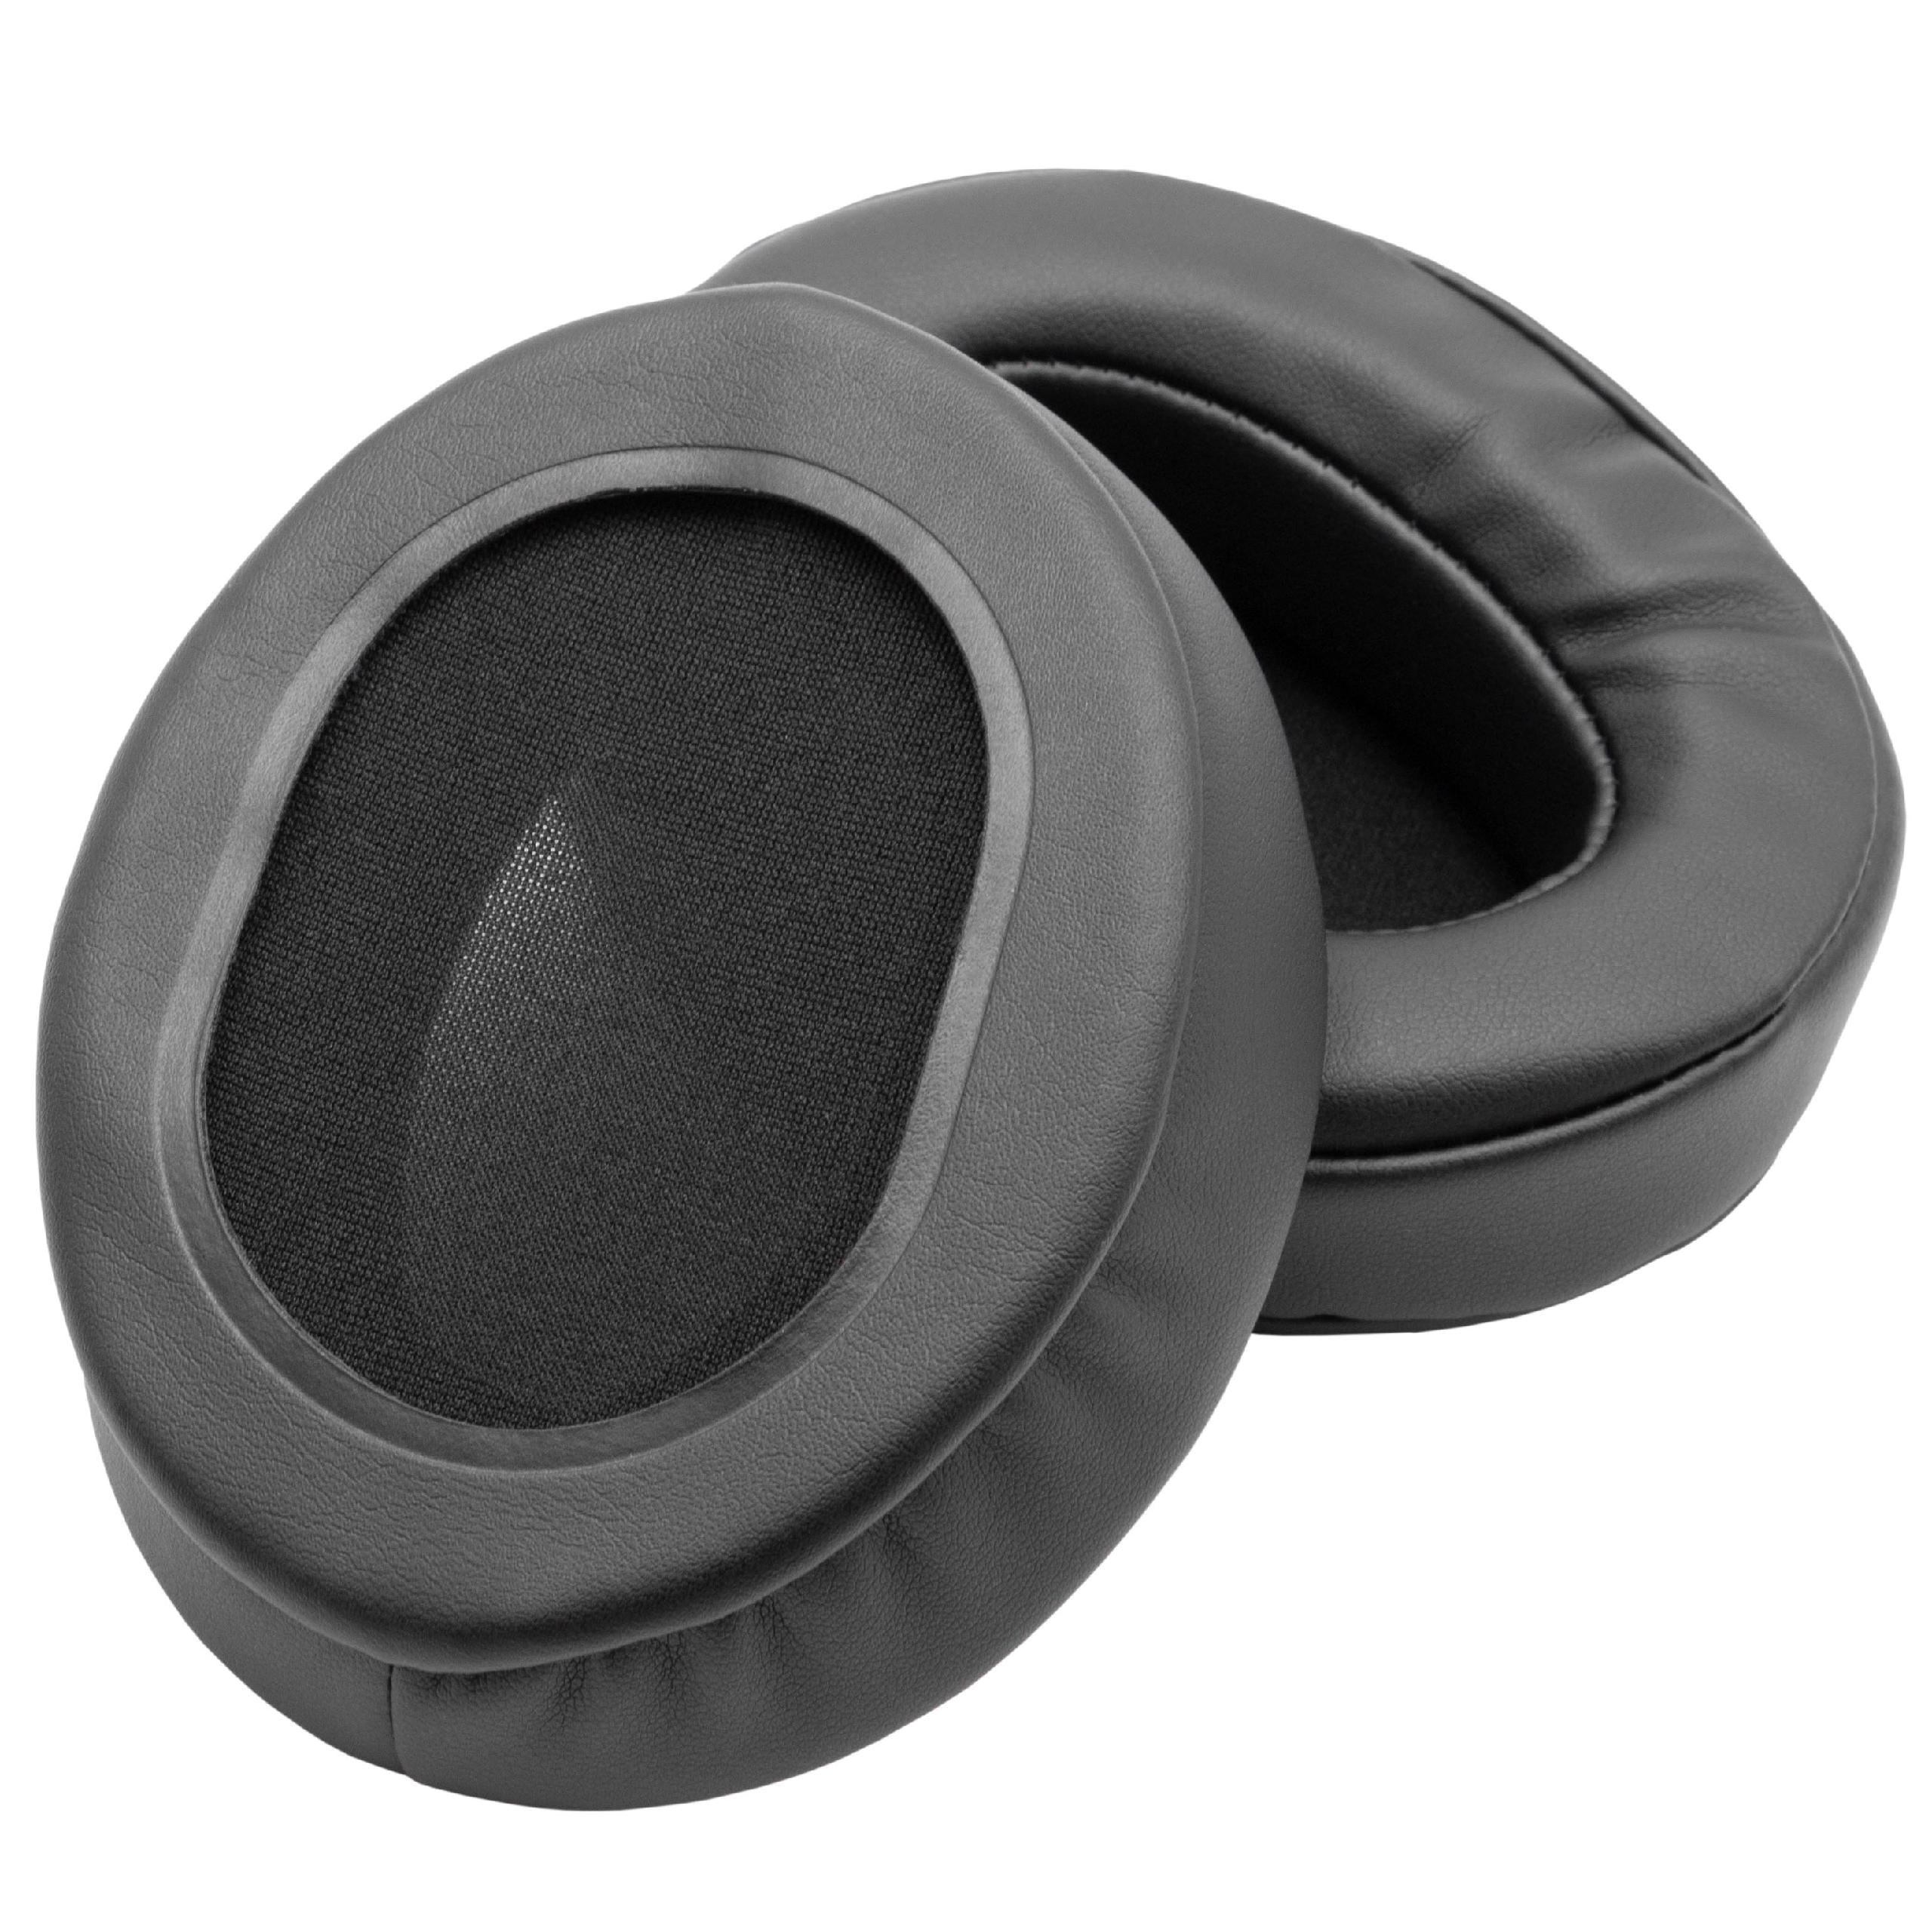 Ohrenpolster passend für Roland / Brainwavz RH-300 Kopfhörer u.a. - Polyurethan / Schaumstoff, 10,2 x 8,2 cm, 